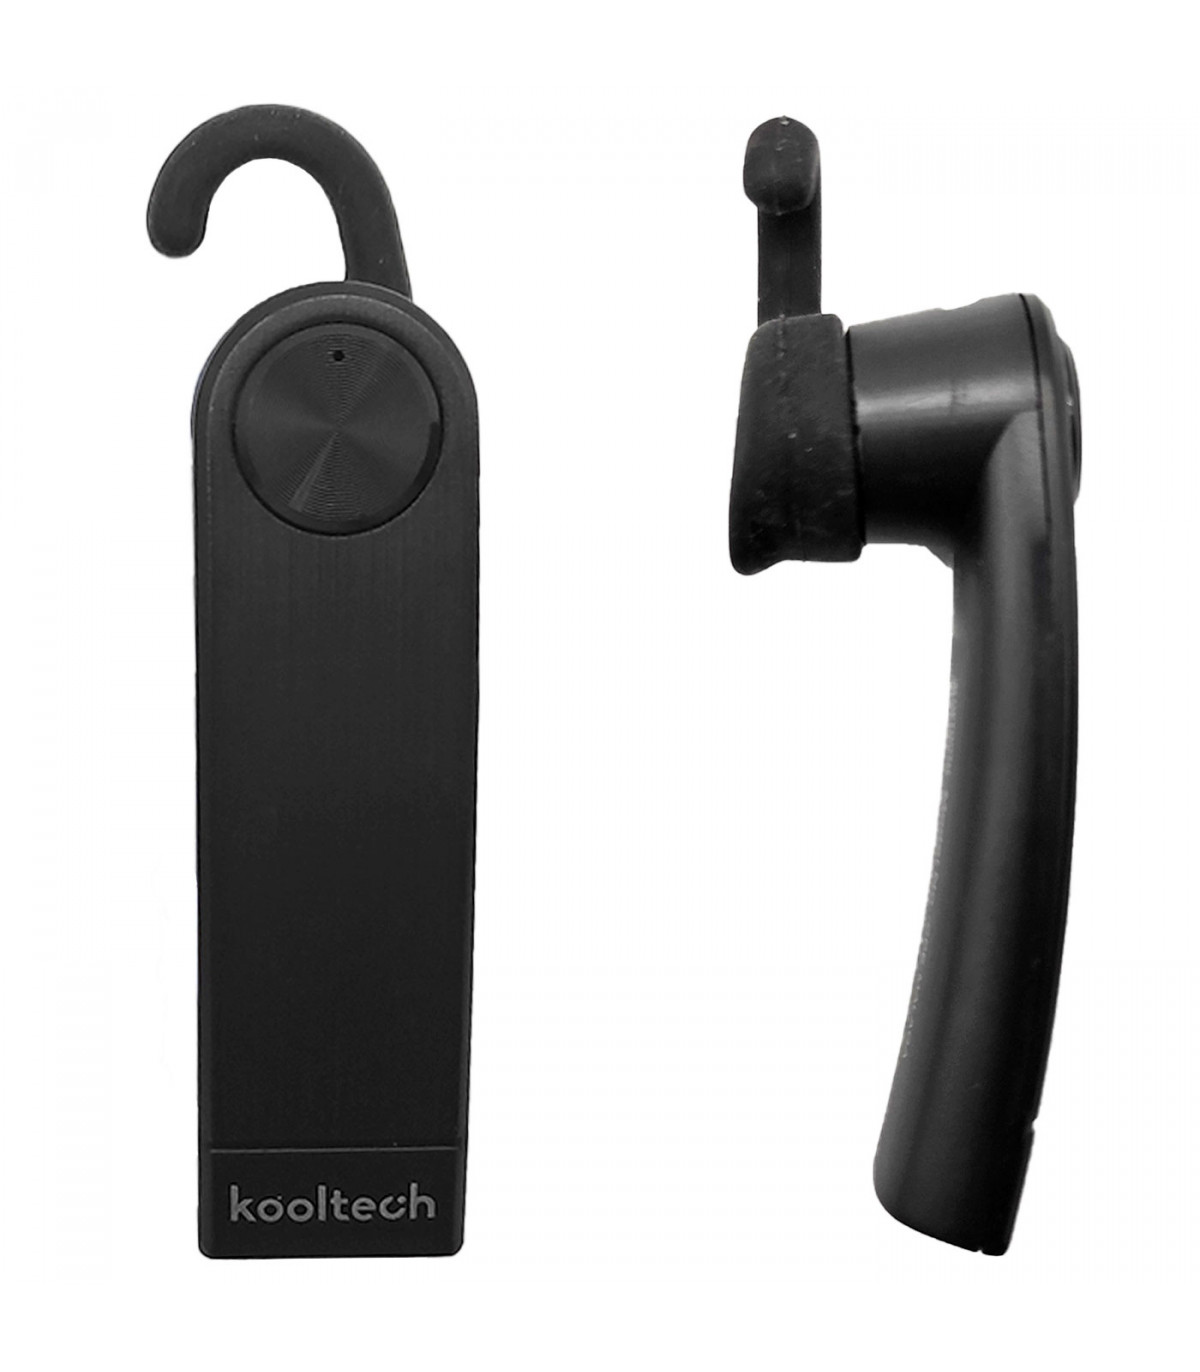 Kooltech - Manos libres, auricular inalámbrico bluetooth con micrófono,  sonido estéreo, control de voz, LED, batería larga durac